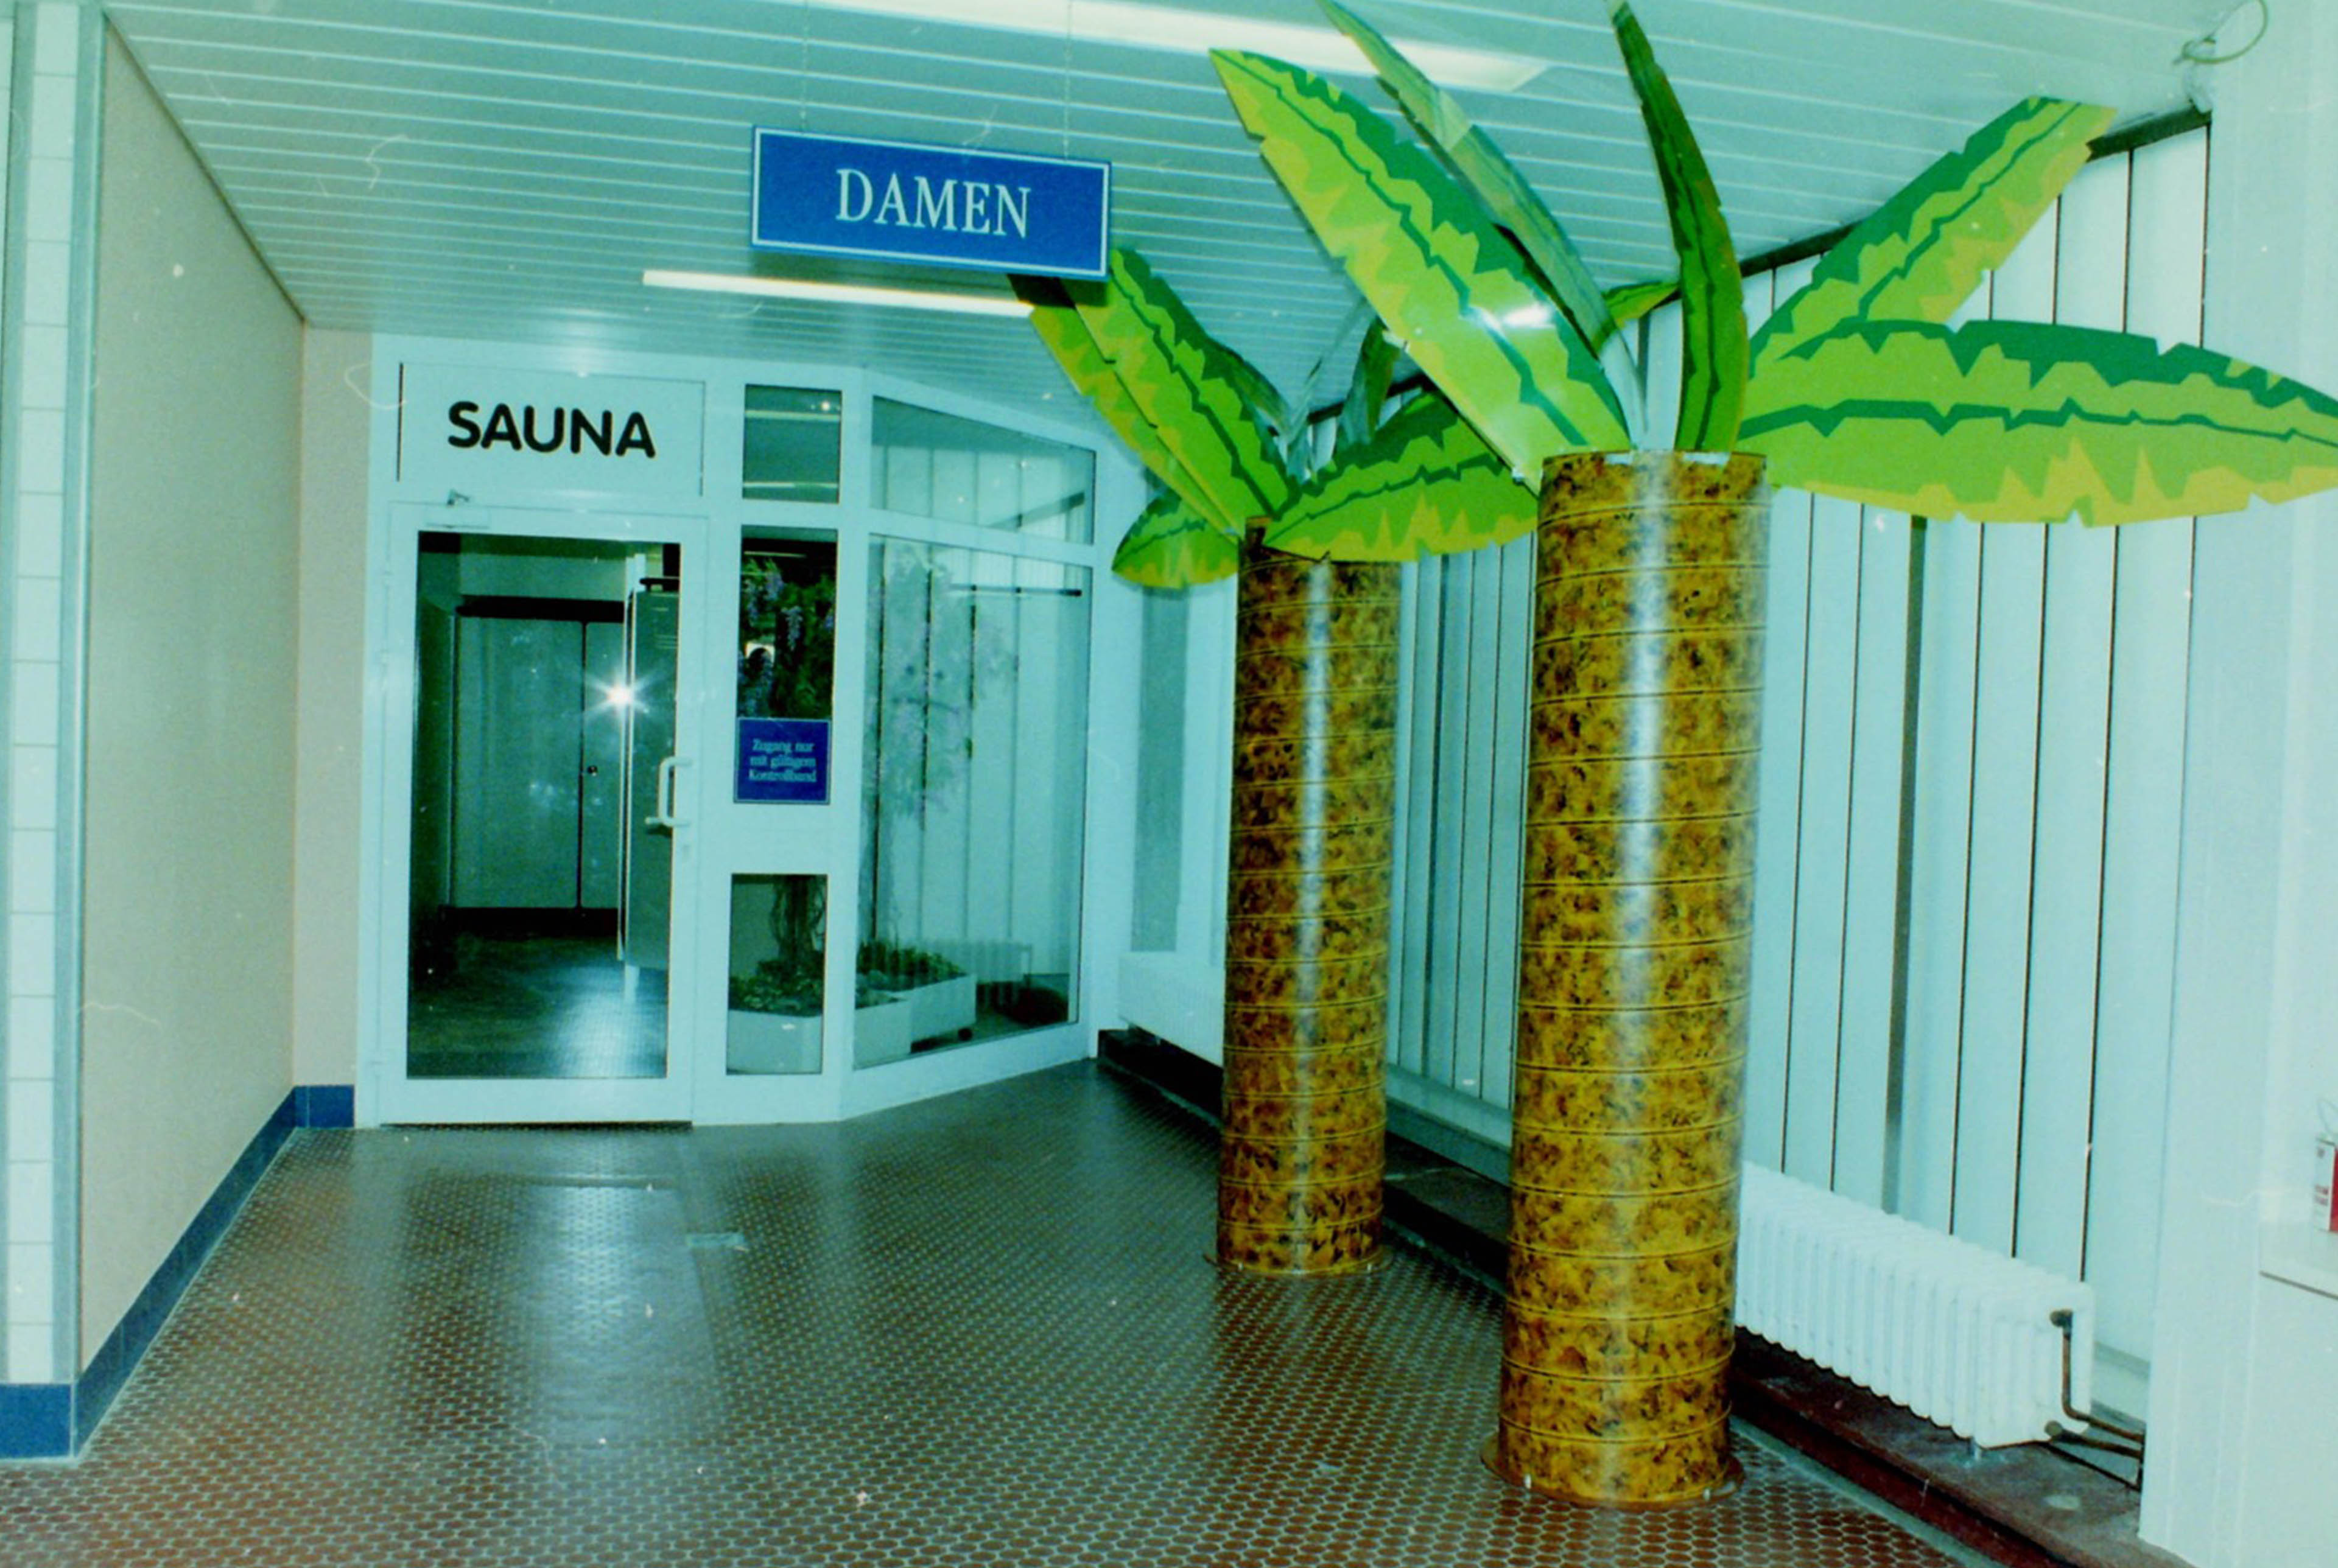 Foto von einem Eingangsbereich der Damensauna. Säulen als Palmen dekoriert